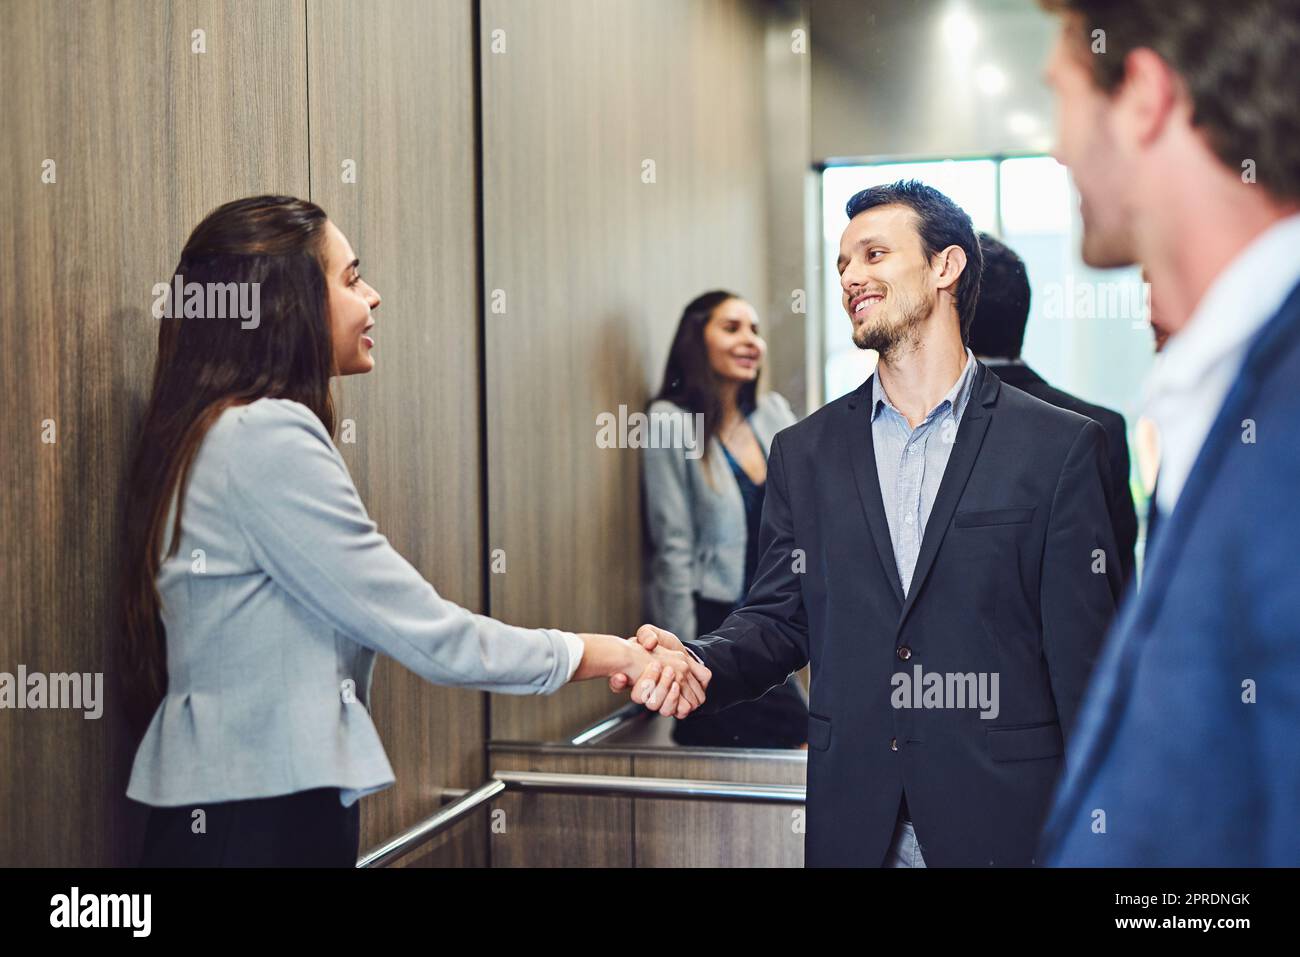 Sie kamen zur Konferenz, um Geschäftsleute zu treffen. Geschäftsleute trafen sich und begrüßten sie in einem Aufzug. Stockfoto